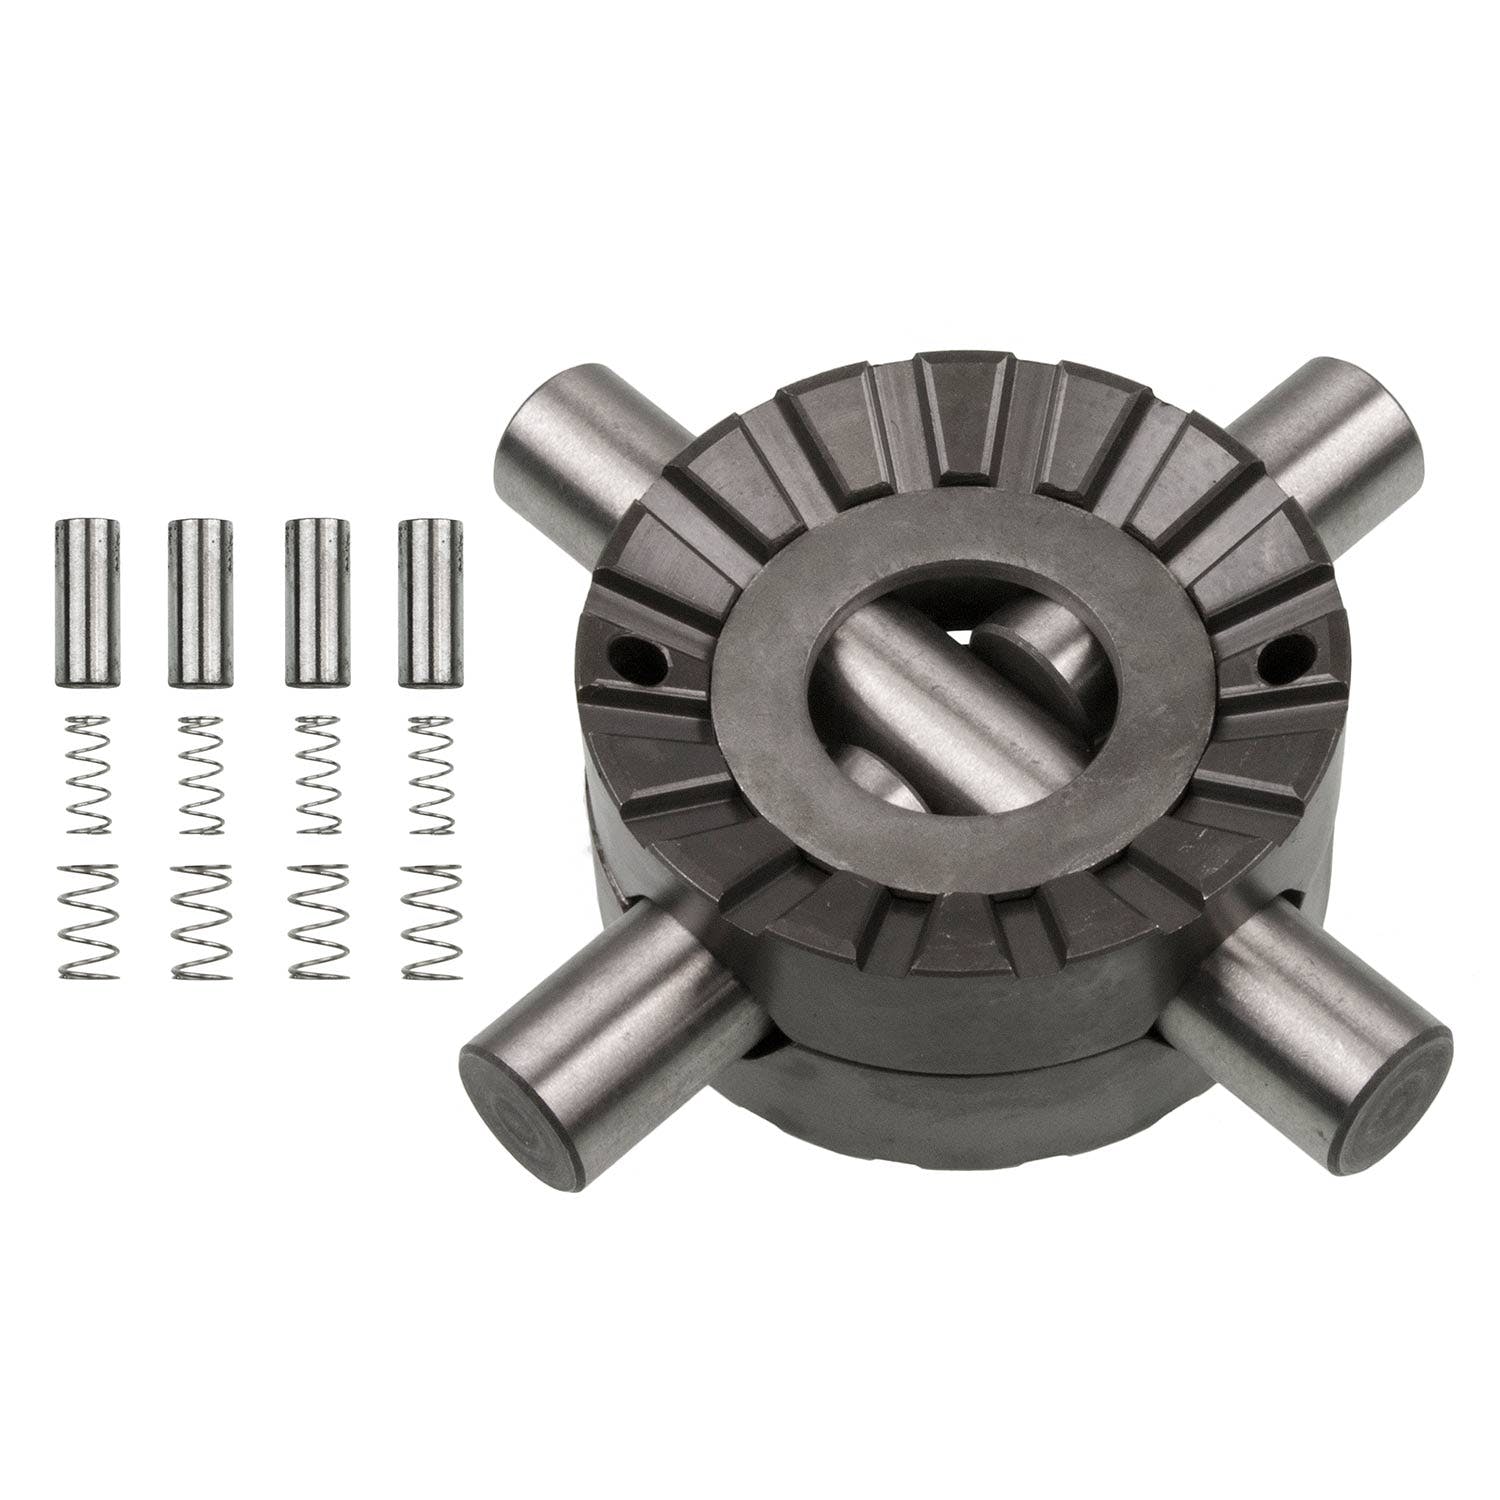 PowerTrax 1520-LR Lock Right Locker